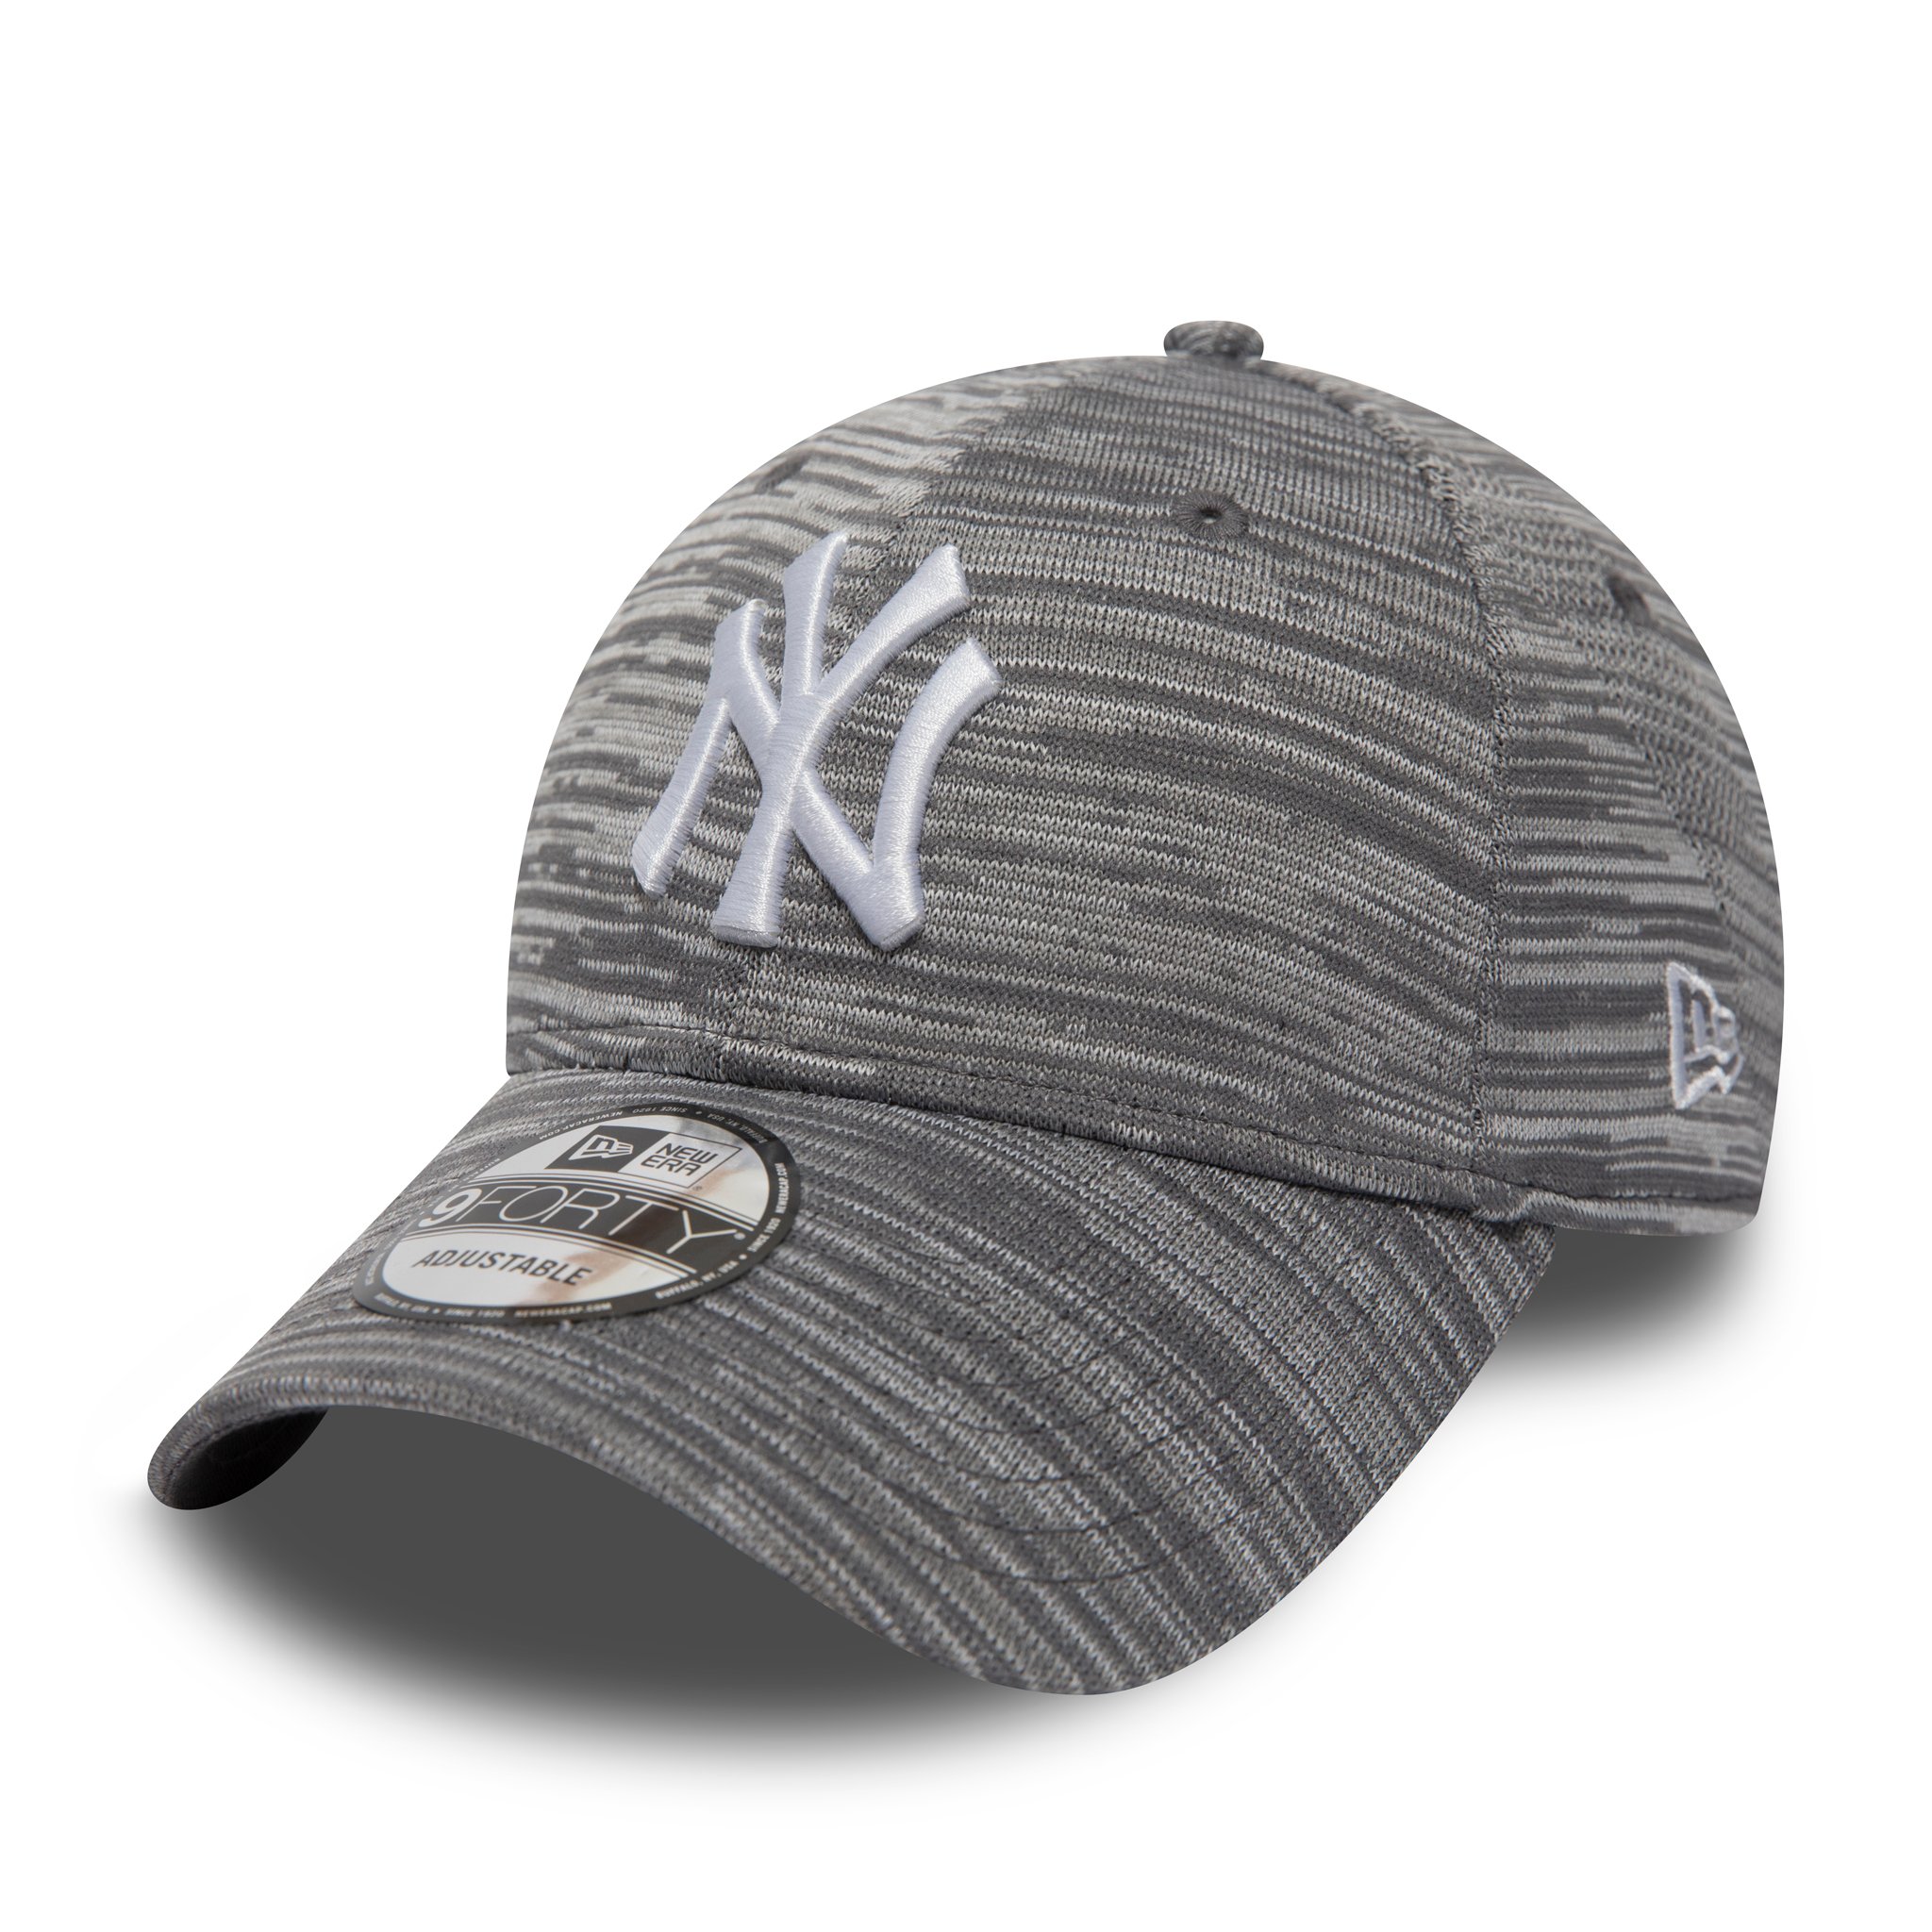 Casquette 9FORTY ajustée grise des Yankees de New York